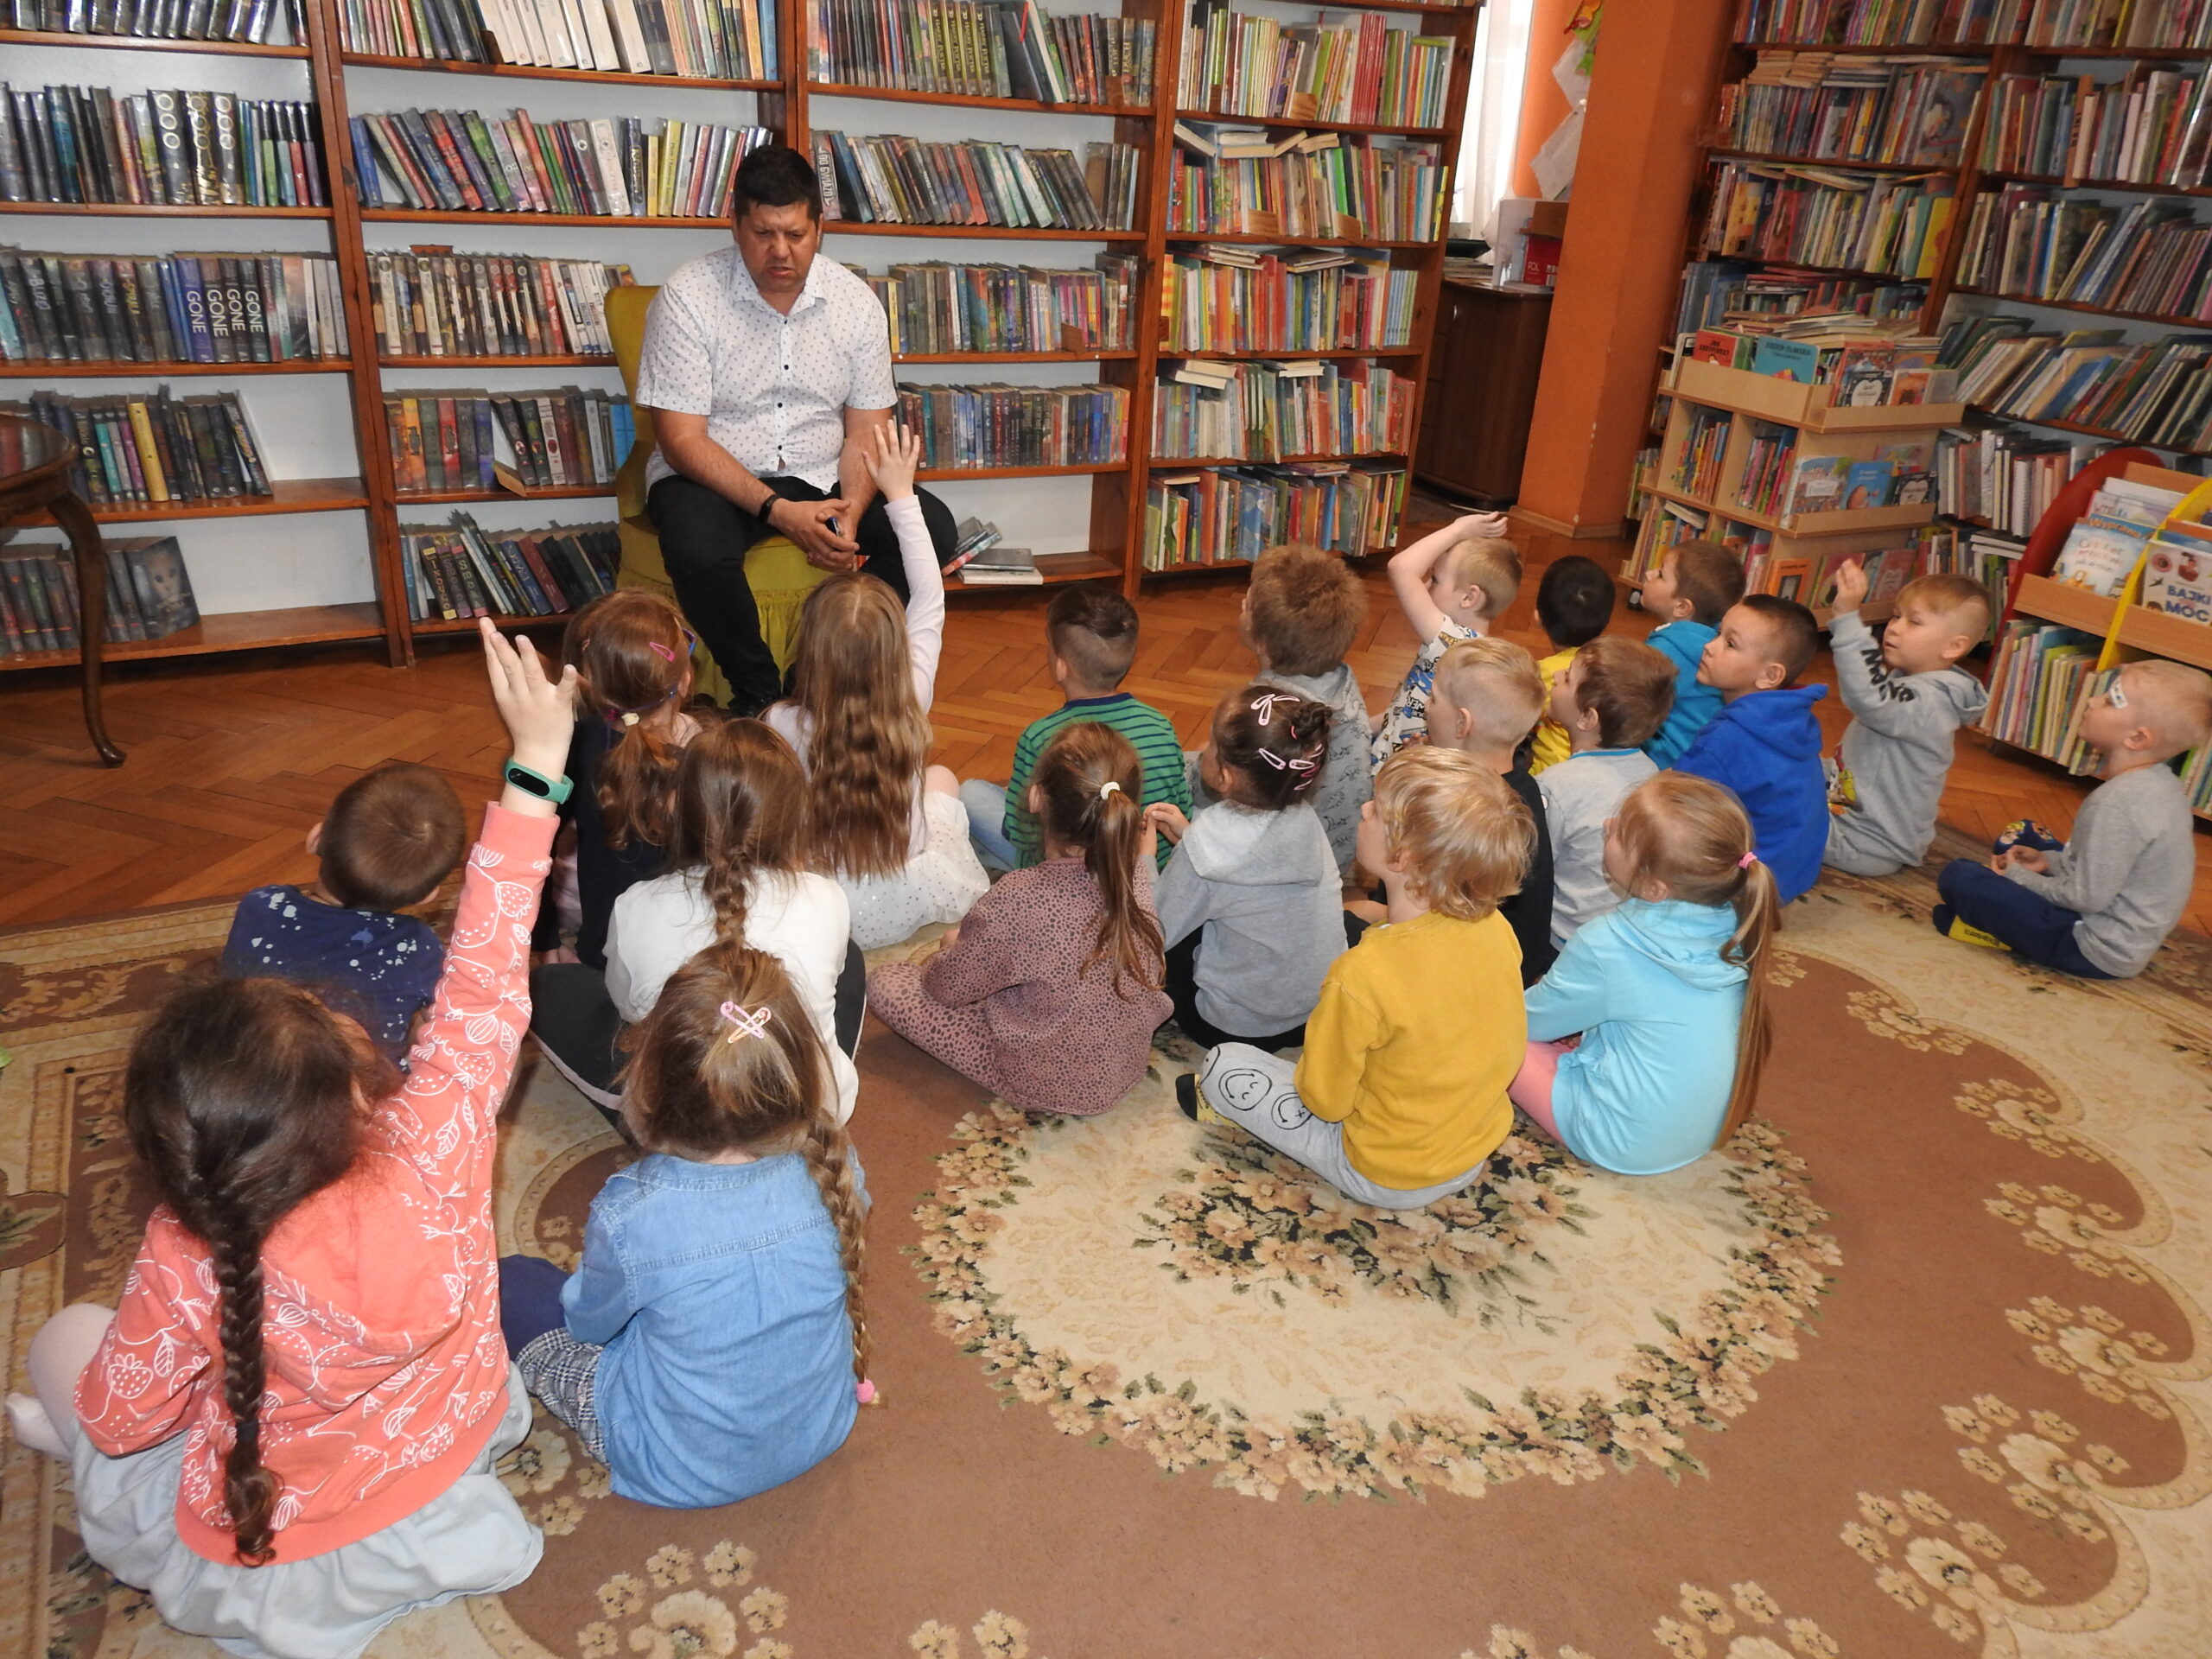 Grupa dzieci siedzi na dywanie. Jest skierowana w stronę mężczyzny, który siedzi na fotelu. Czwórka dzieci trzyma rękę w górze. W tle regały z książkami.